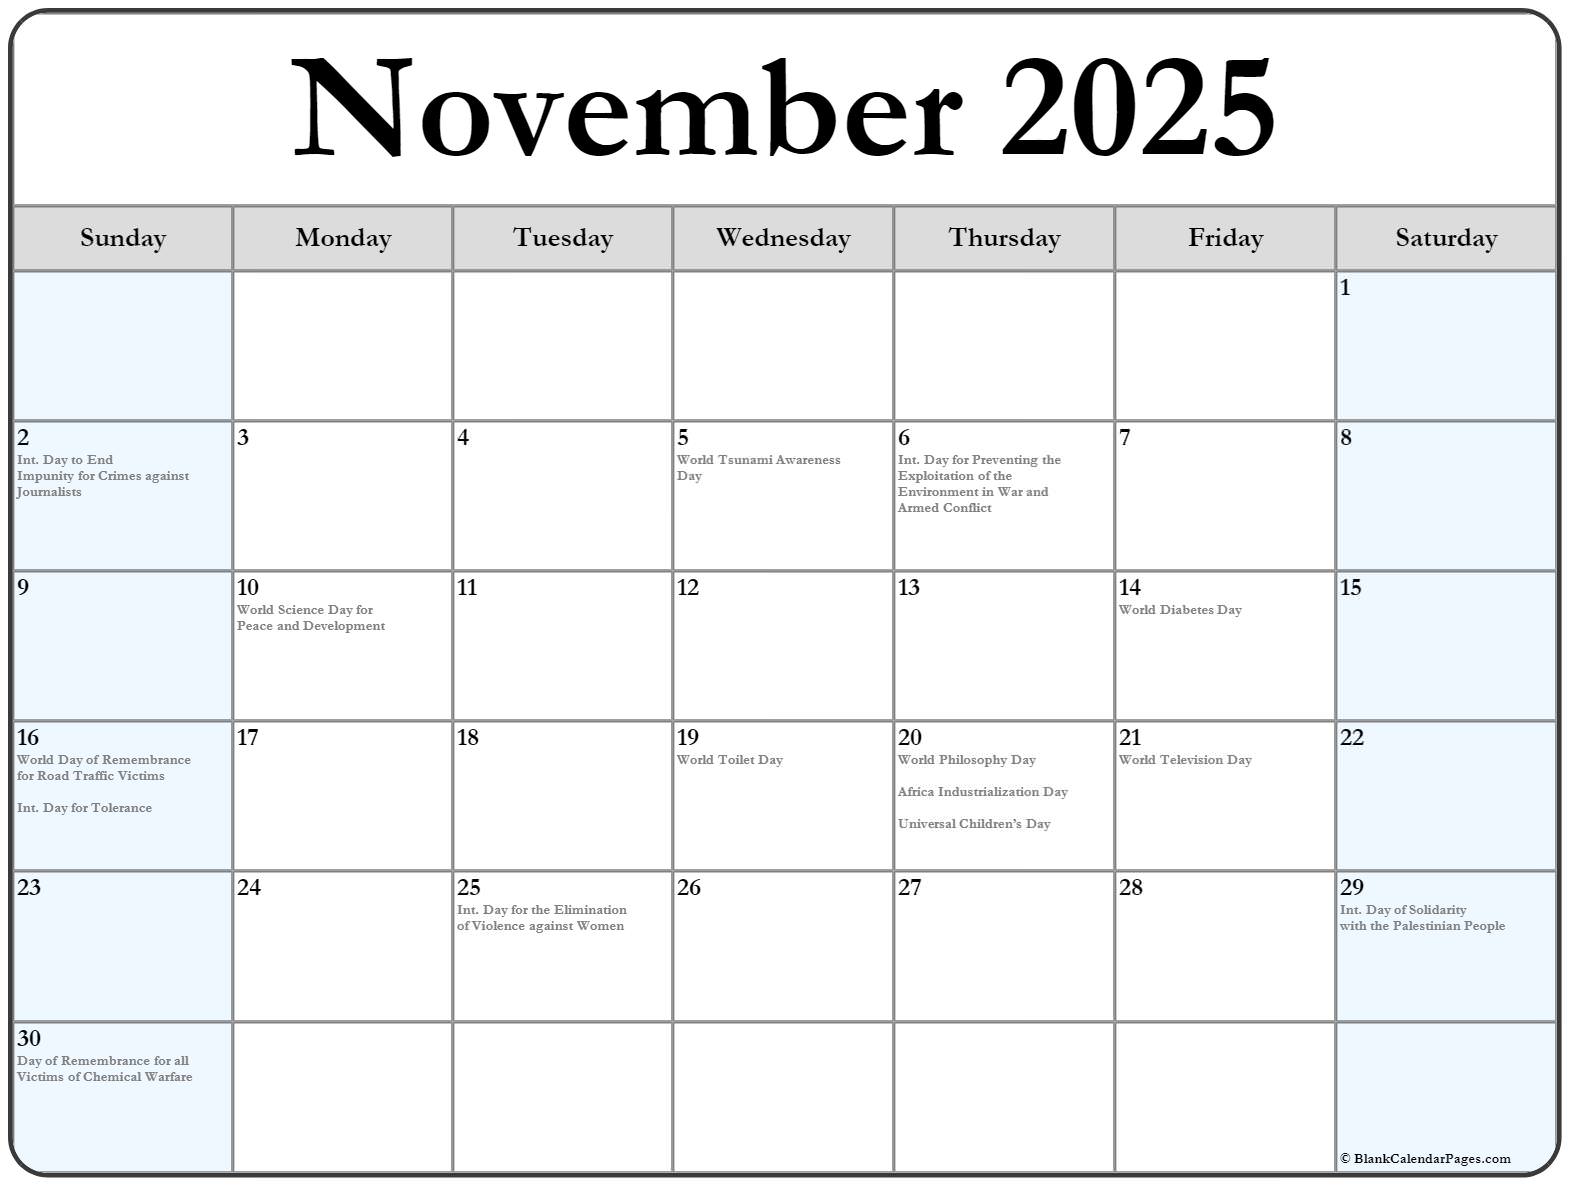 Баланс декабрь 2023. Календарь декабрь 2023. Календарь на декабрь 2023 года. Ноябрь декабрь 2023. Календарь на 2023 декабрь месяц с праздниками.